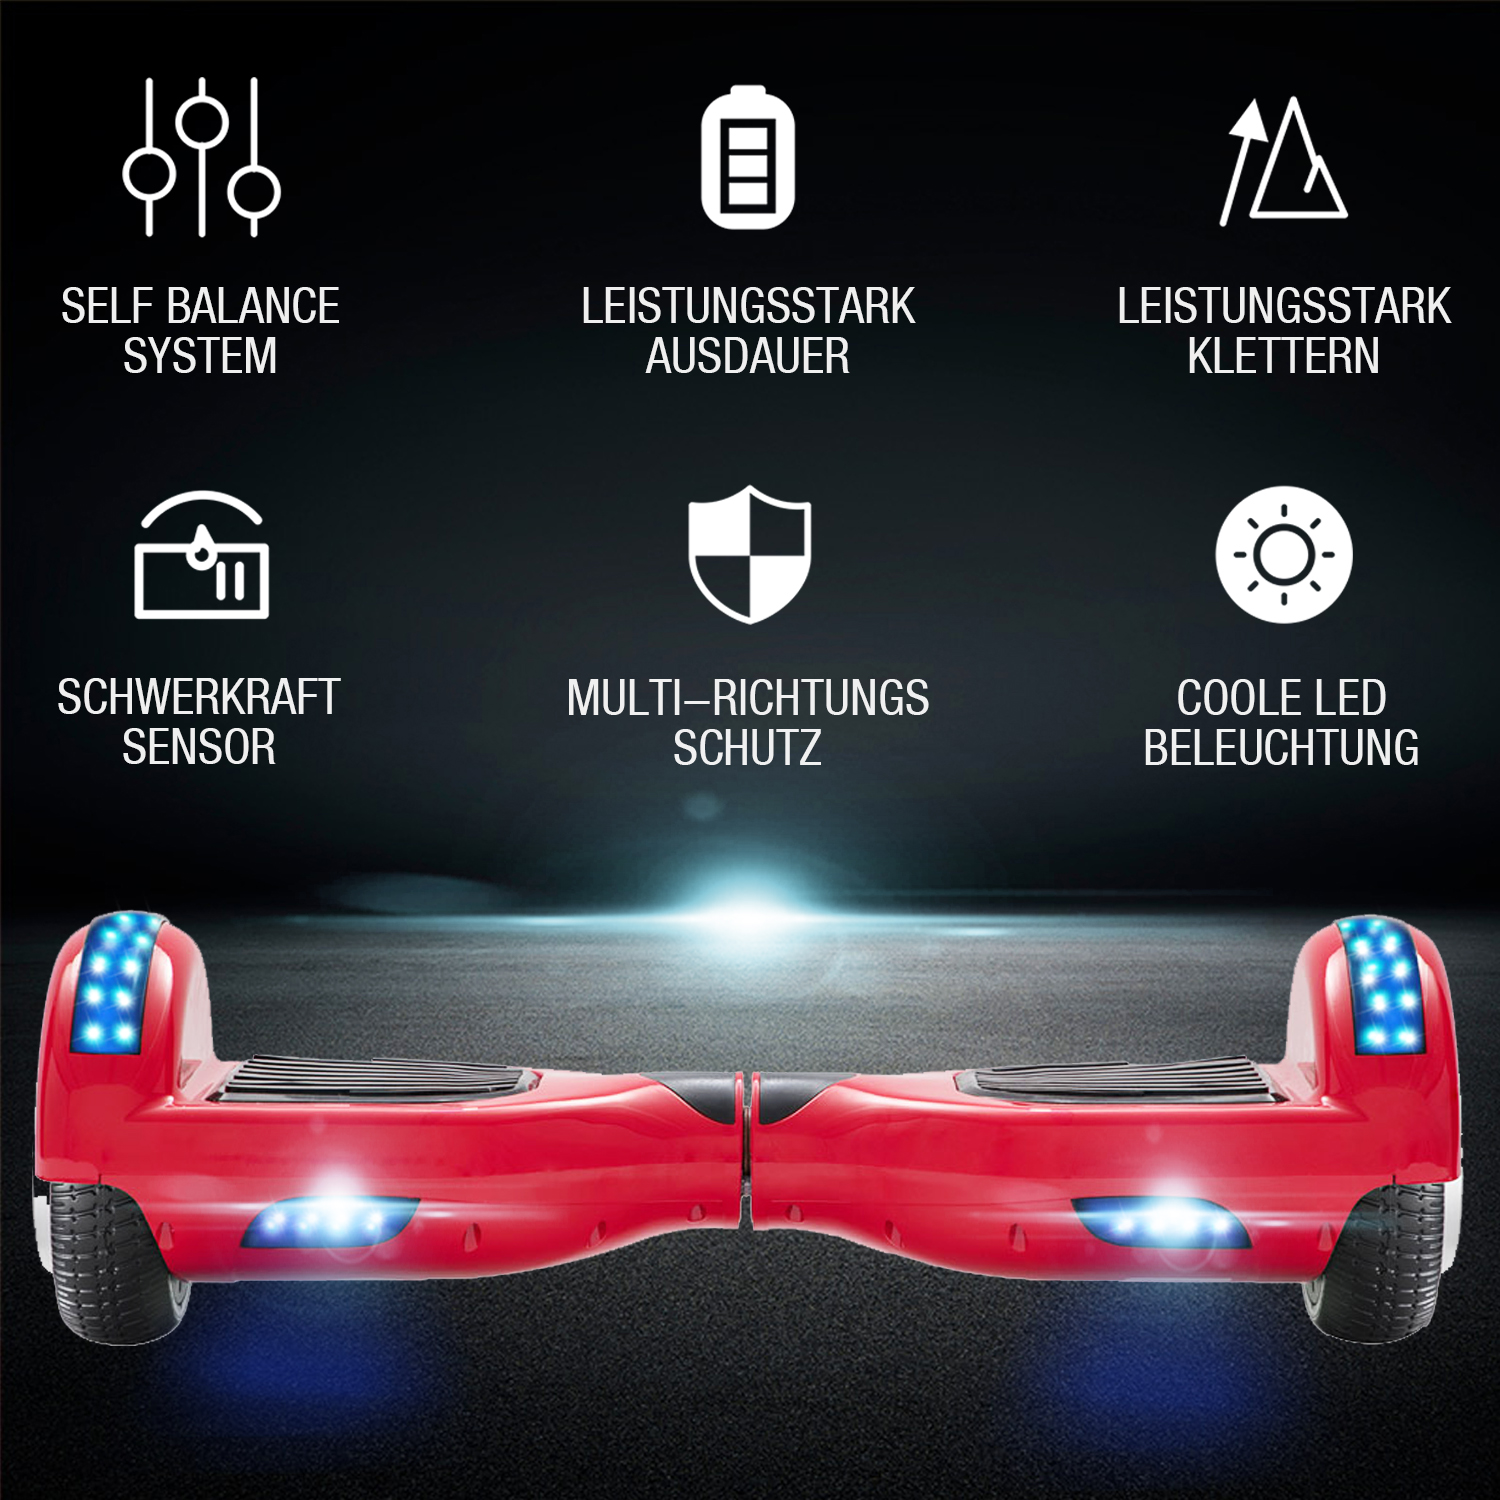 Neues 6,5" rotes Hoverboard für Kinder, mit Bluetooth Musik Lautsprecher und Disco LED Licht - 500W 12km/h-Hoverboarde